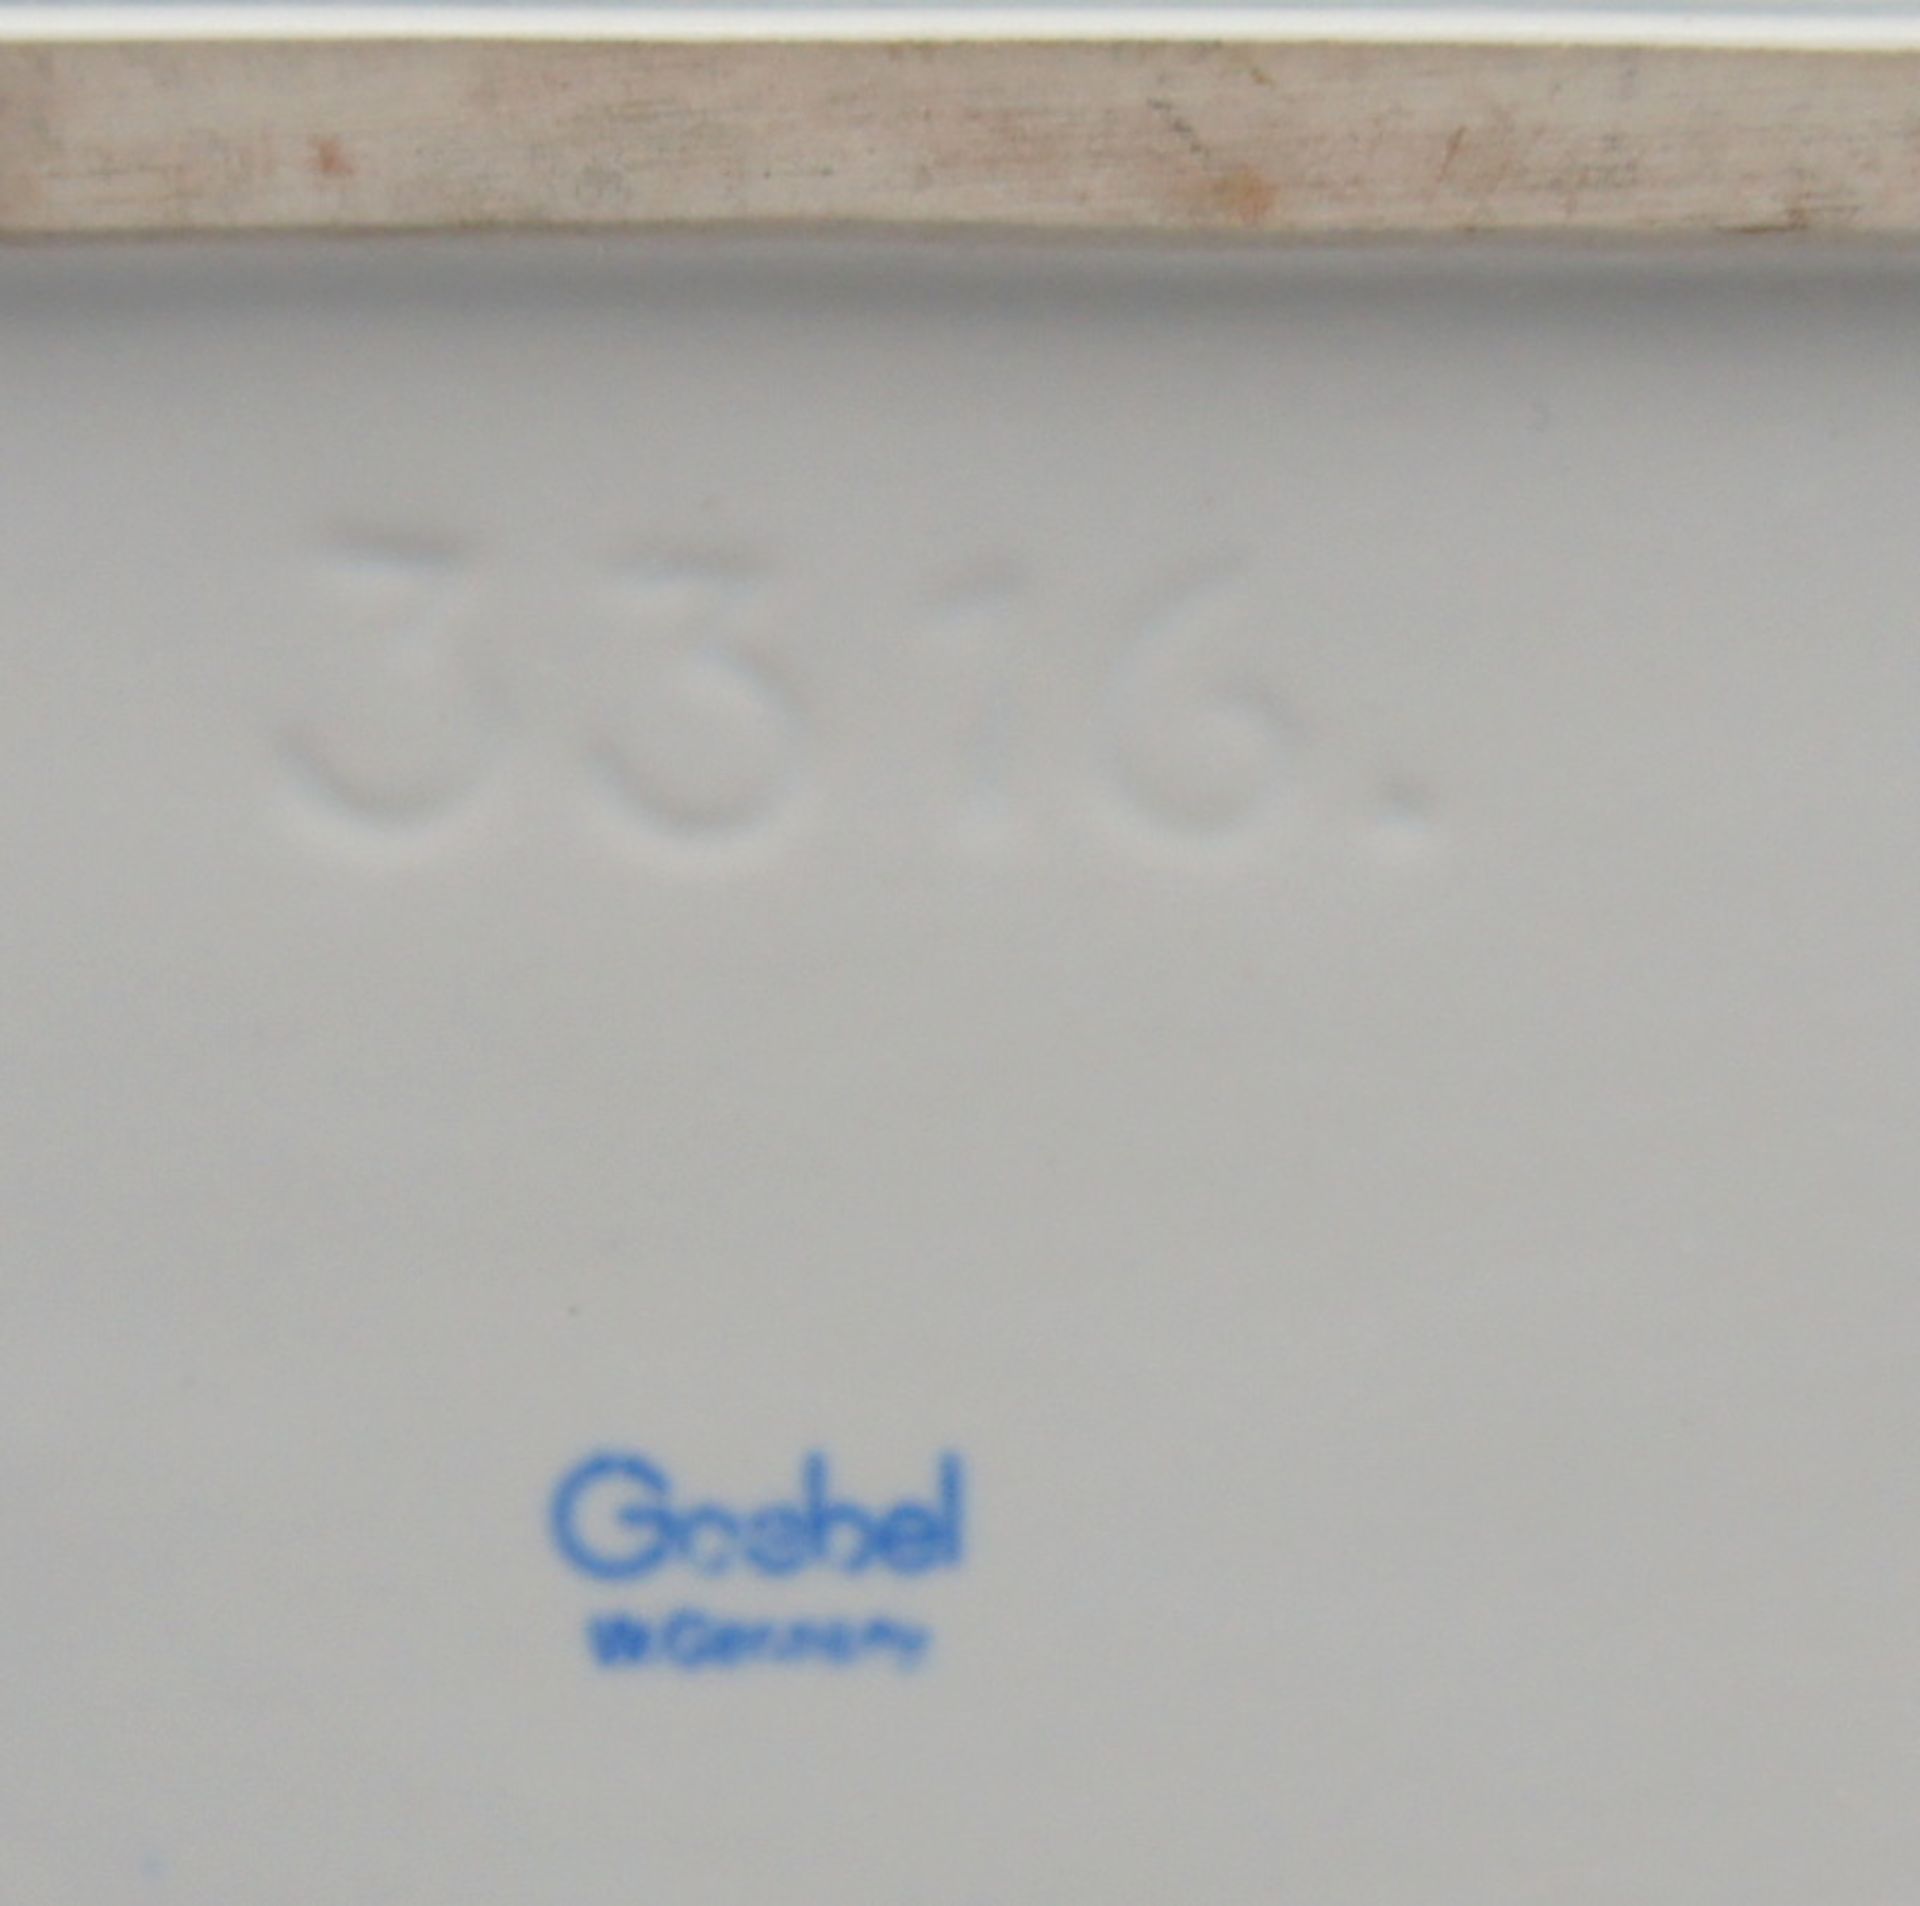 Goebel, Steigendes PferdPorzellan, am Boden mit blauer "Goebel Germany" Marke. Auf rechteckigem - Bild 4 aus 4